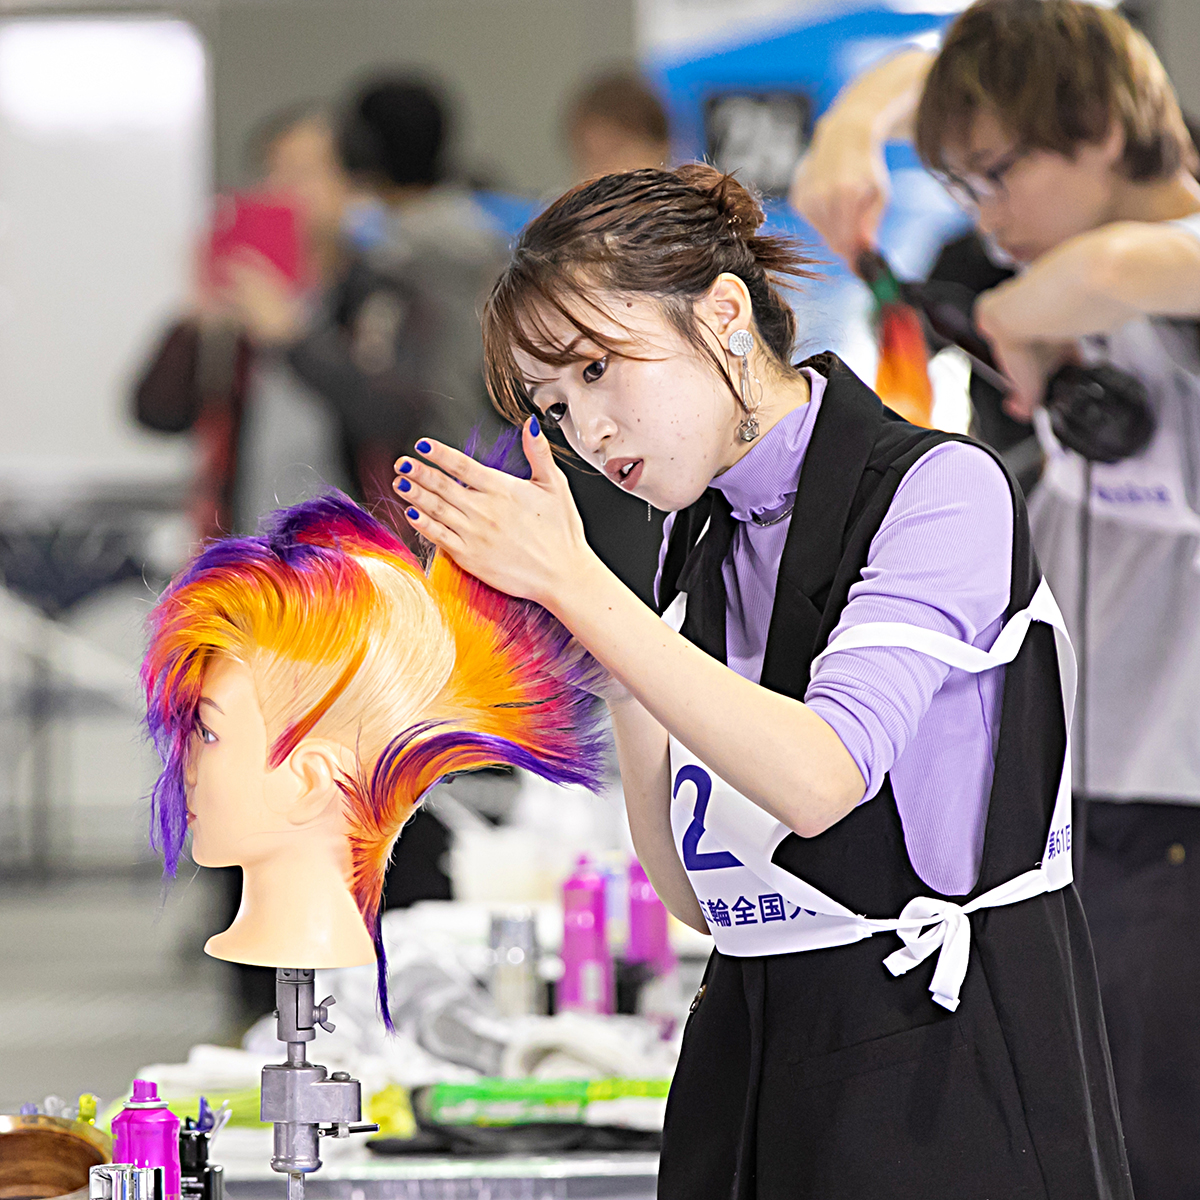 技能五輪全国大会「美容」職種！ ポイント① ポイントとなるのはスピード感 それぞれの課題で求められる要素を、いかにして時間内に完成させるかが重要です #WorldSkills #WorldSkillsJapan #技能五輪全国大会 #NationalSkills #美容 #Hairdressing